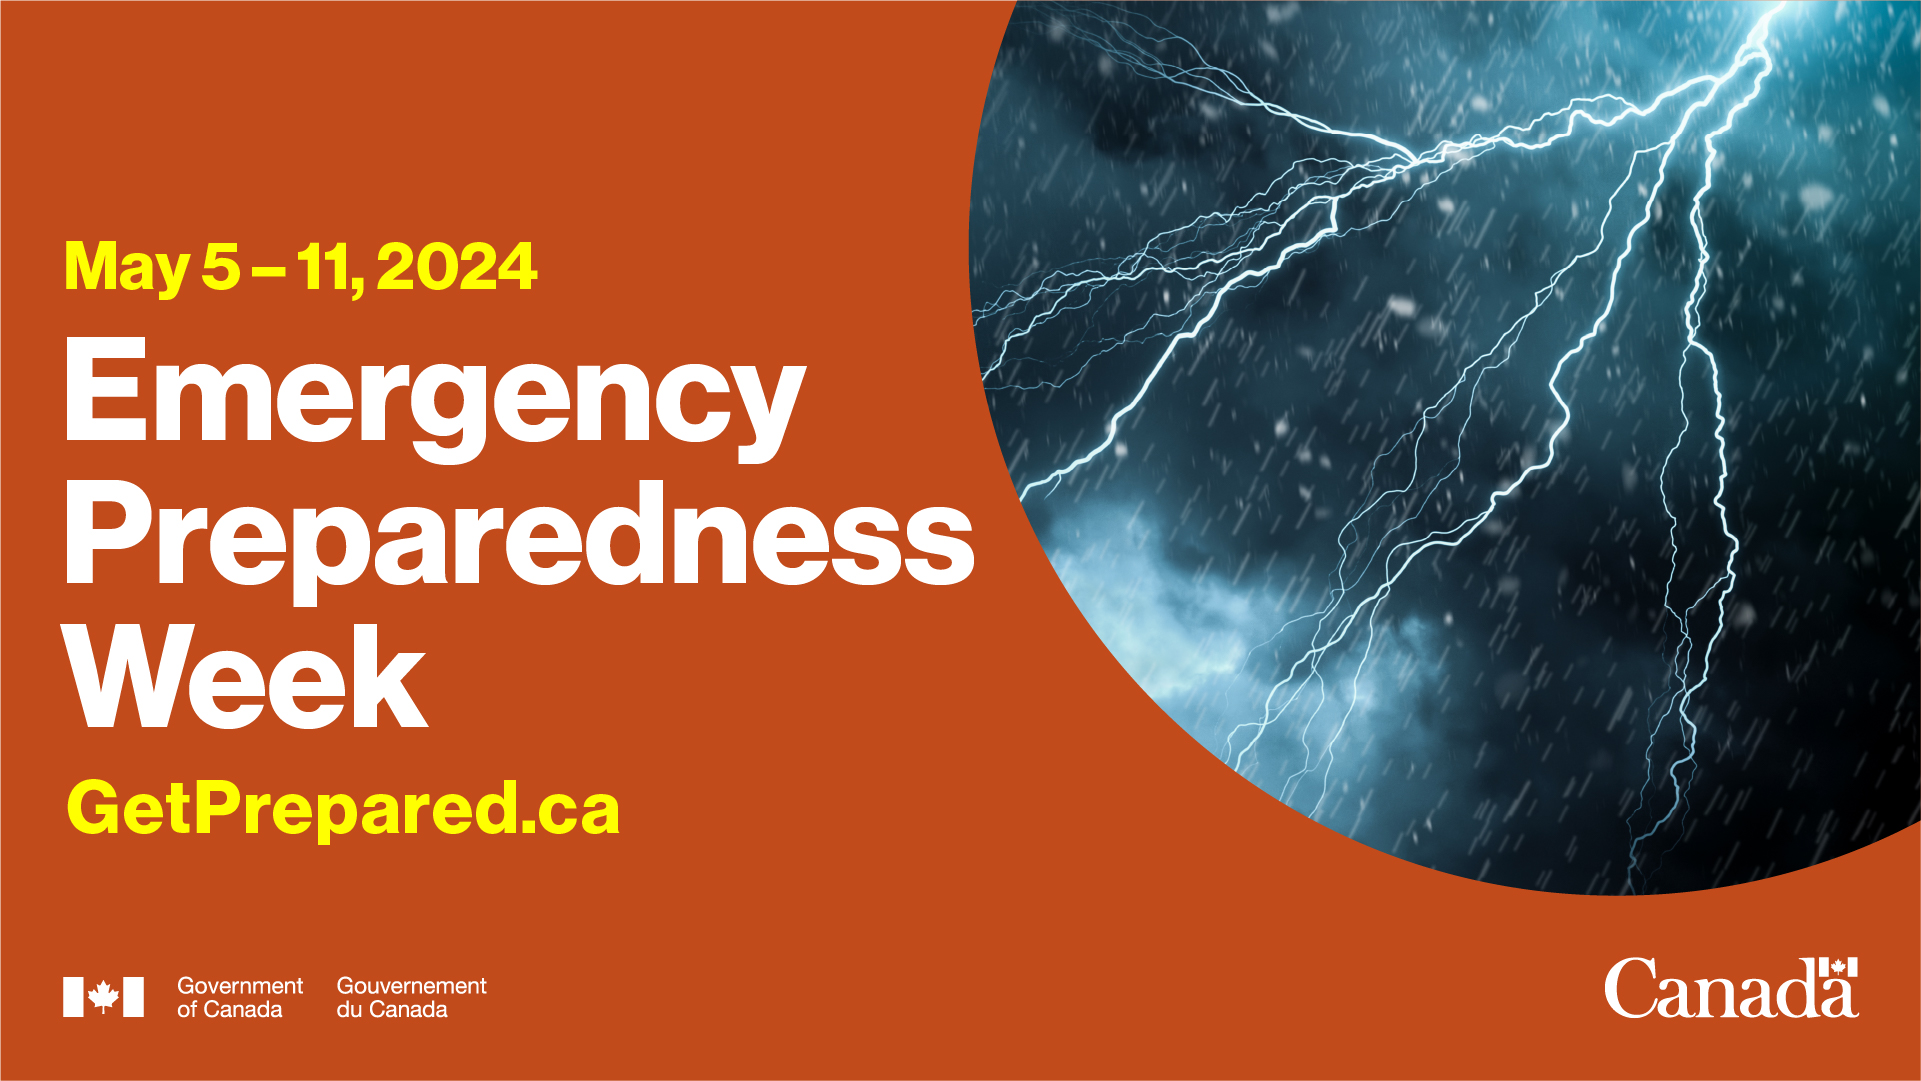 Emergency Preparedness Week 2024